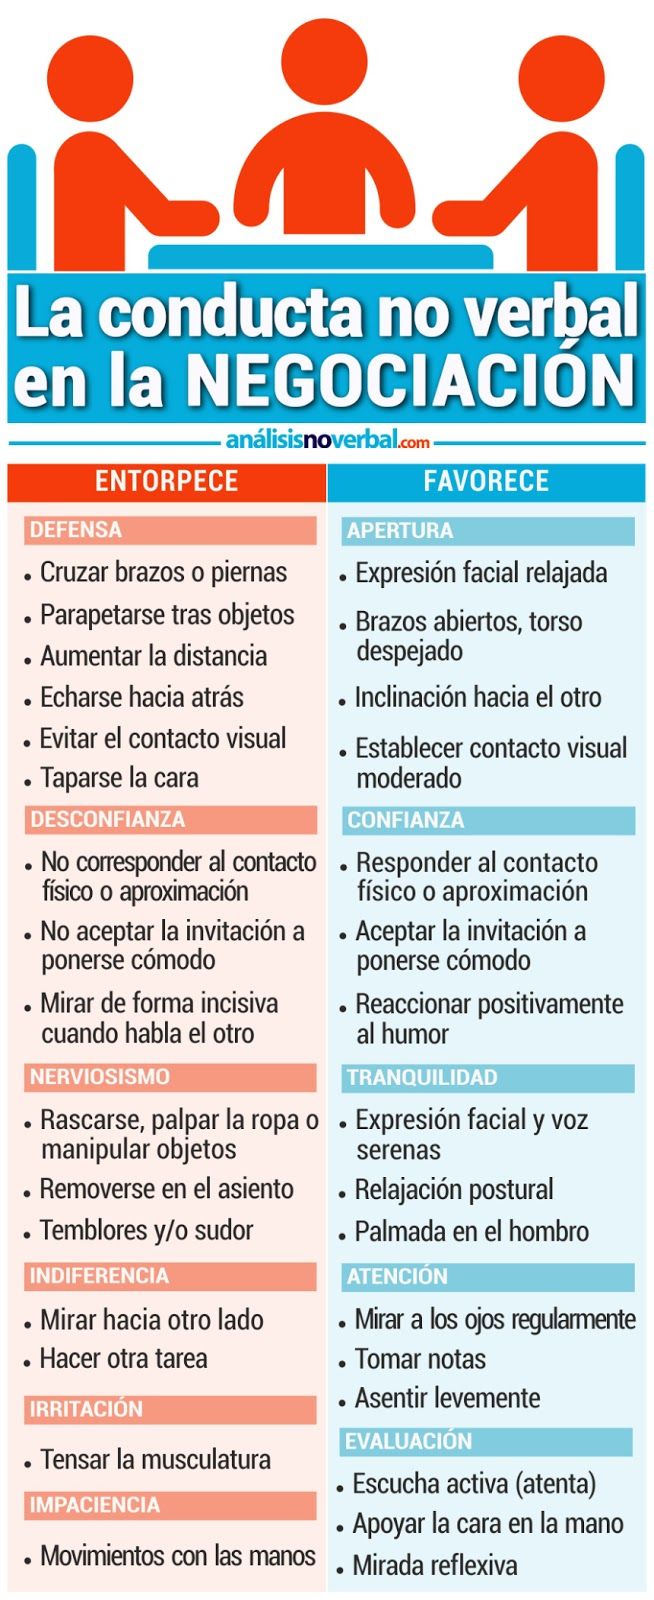 Psychology-Infographic-Miguel-Garcia-Gonzalez-La-conducta-no-verbal Psychology Infographic : Miguel García González: La conducta no verbal en la #Negociación